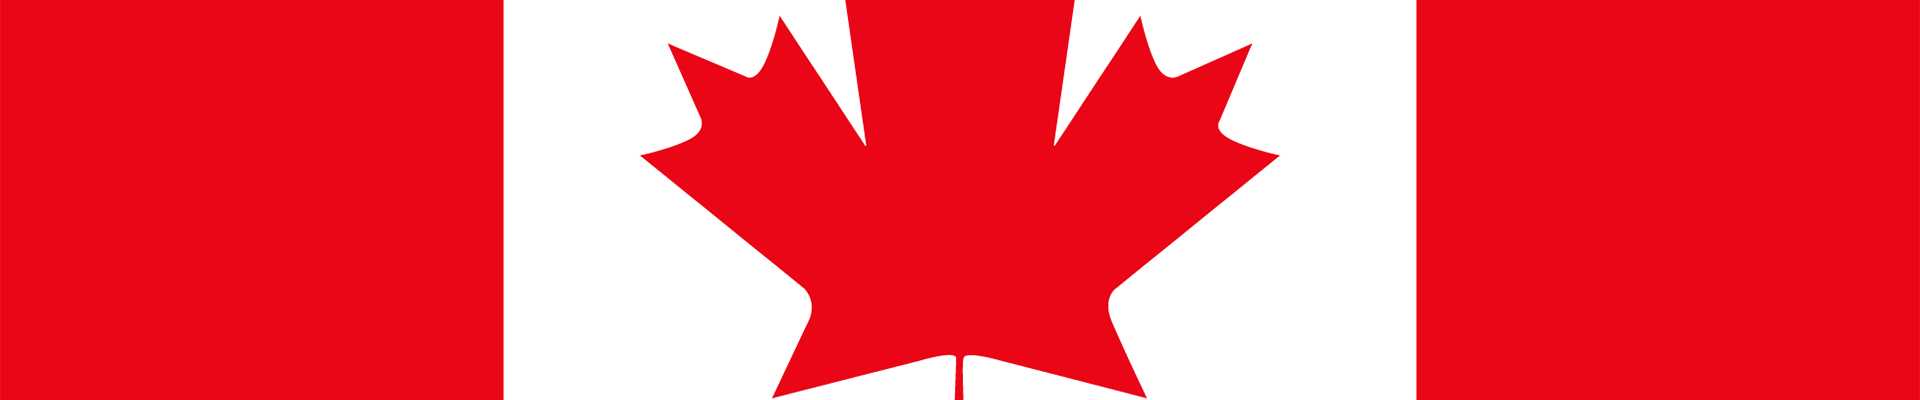 Fransa Açık canlı akışı — Kanada bayrağı